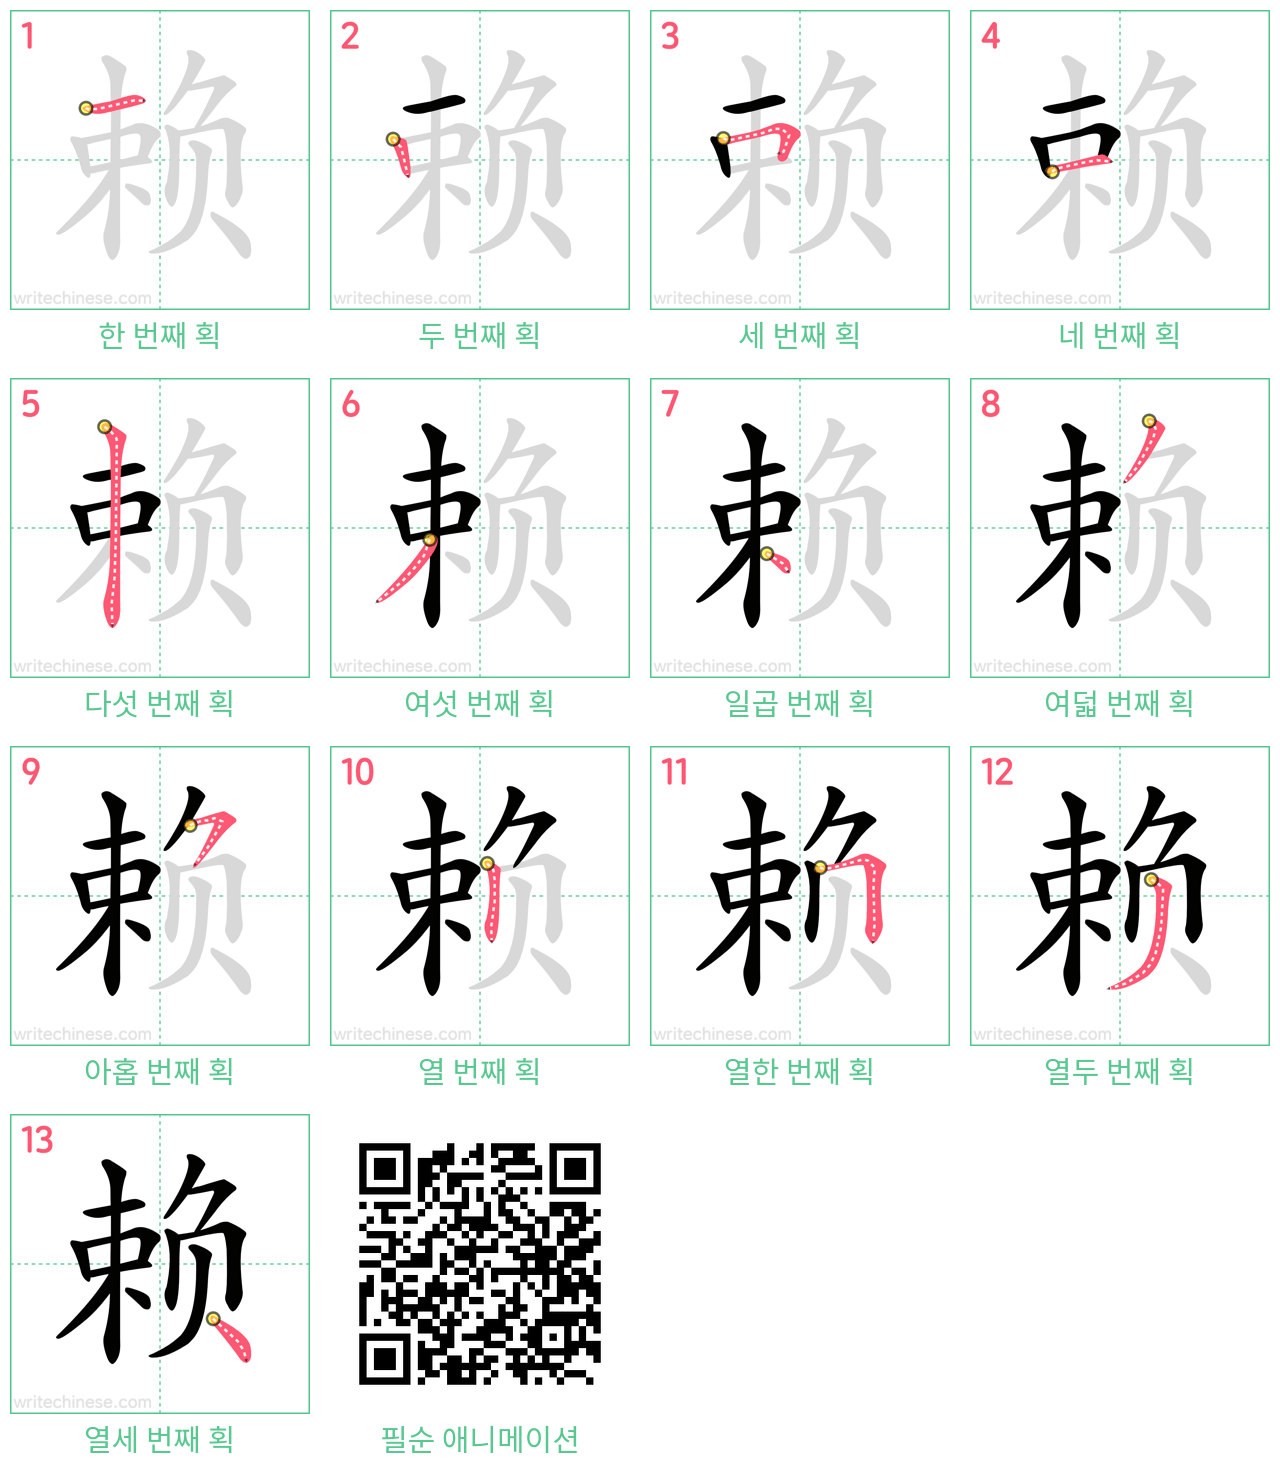 赖 step-by-step stroke order diagrams